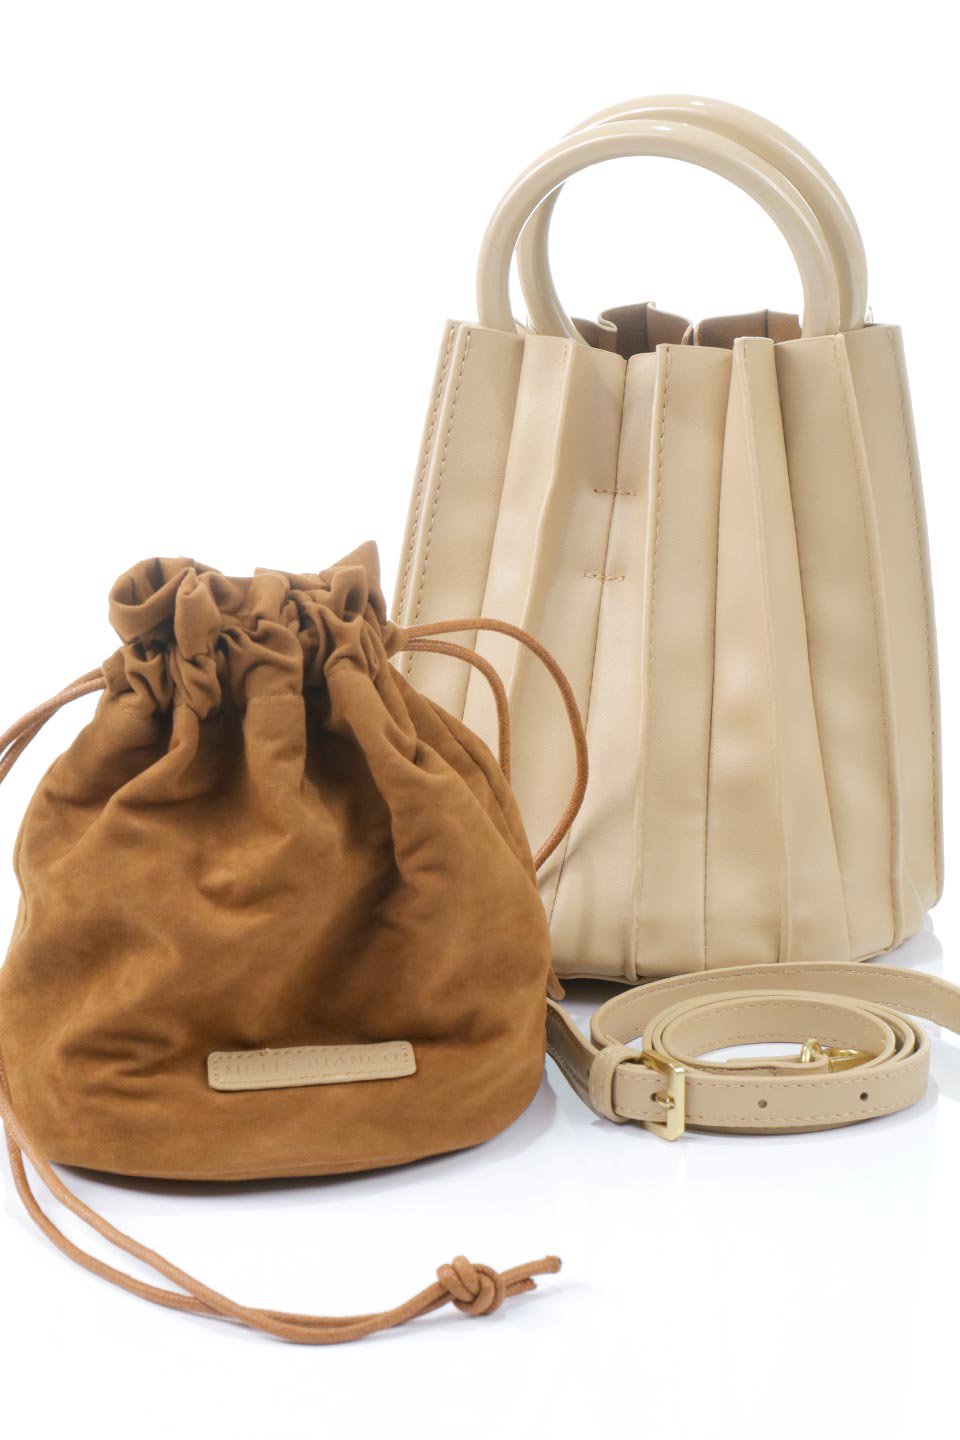 meliebiancoのLily(Tan)アコーディオンプリーツ・バケツバッグ/海外ファッション好きにオススメのインポートバッグとかばん、MelieBianco（メリービアンコ）のバッグやハンドバッグ。ビーガンレザーのアコーディオンプリーツが特徴のバケツ型バッグ。ハンドバッグとしてもストラップを付けてショルダーバッグとしても使用できます。/main-7